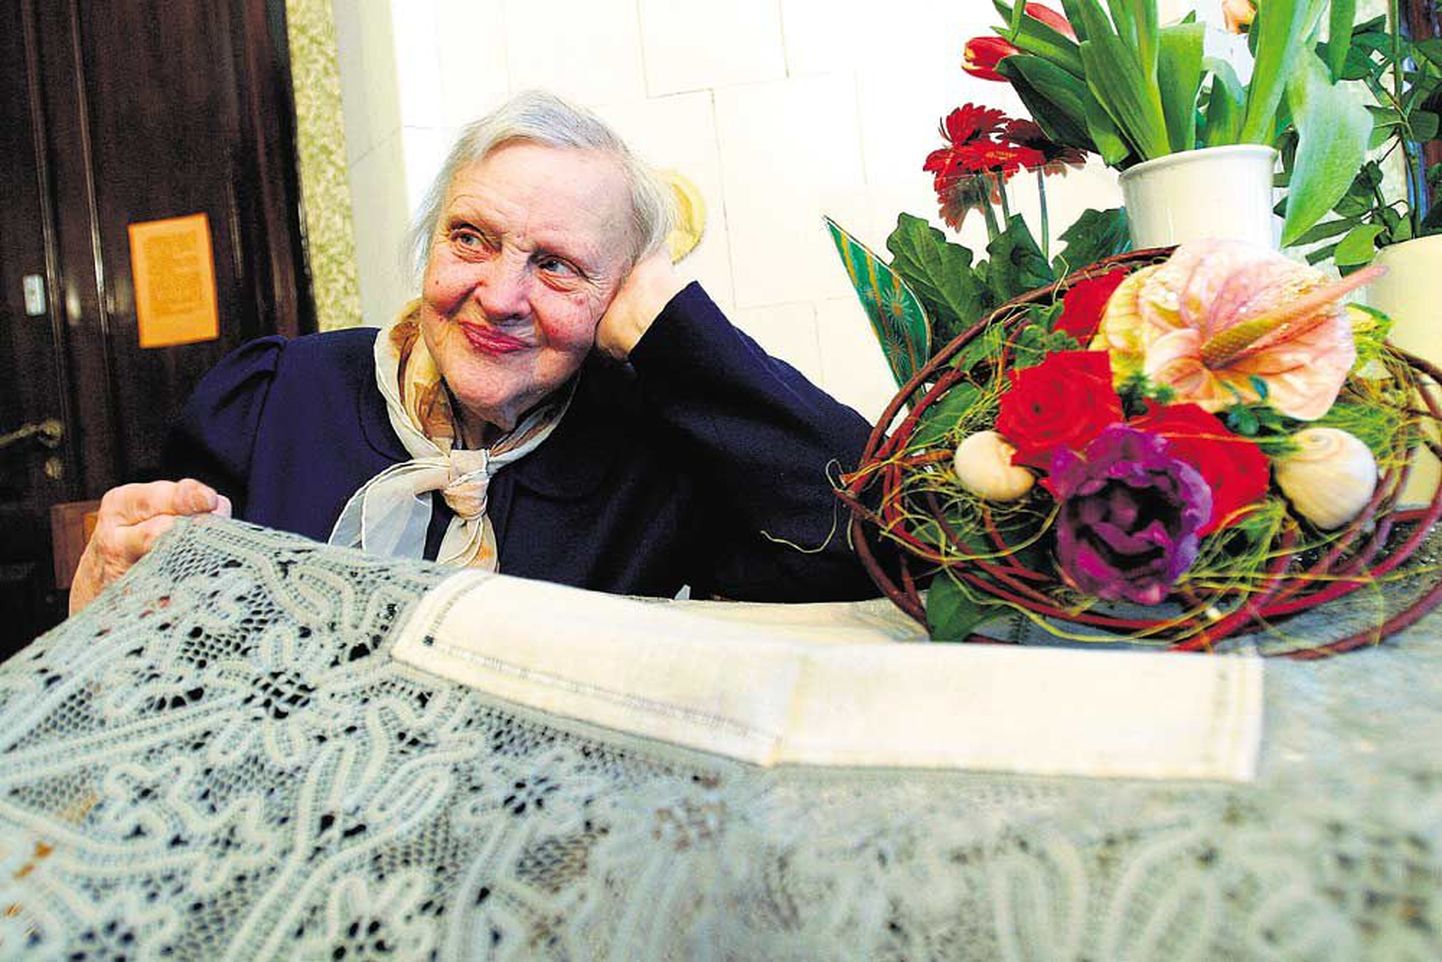 Alati rõõmsameelne käsitöömeister Ljubov Mitt näitab huvilistele oma kuningliku niplispitsiga käsitööd, mida eksponeeriti tema 90. sünnipäeva näitusel.